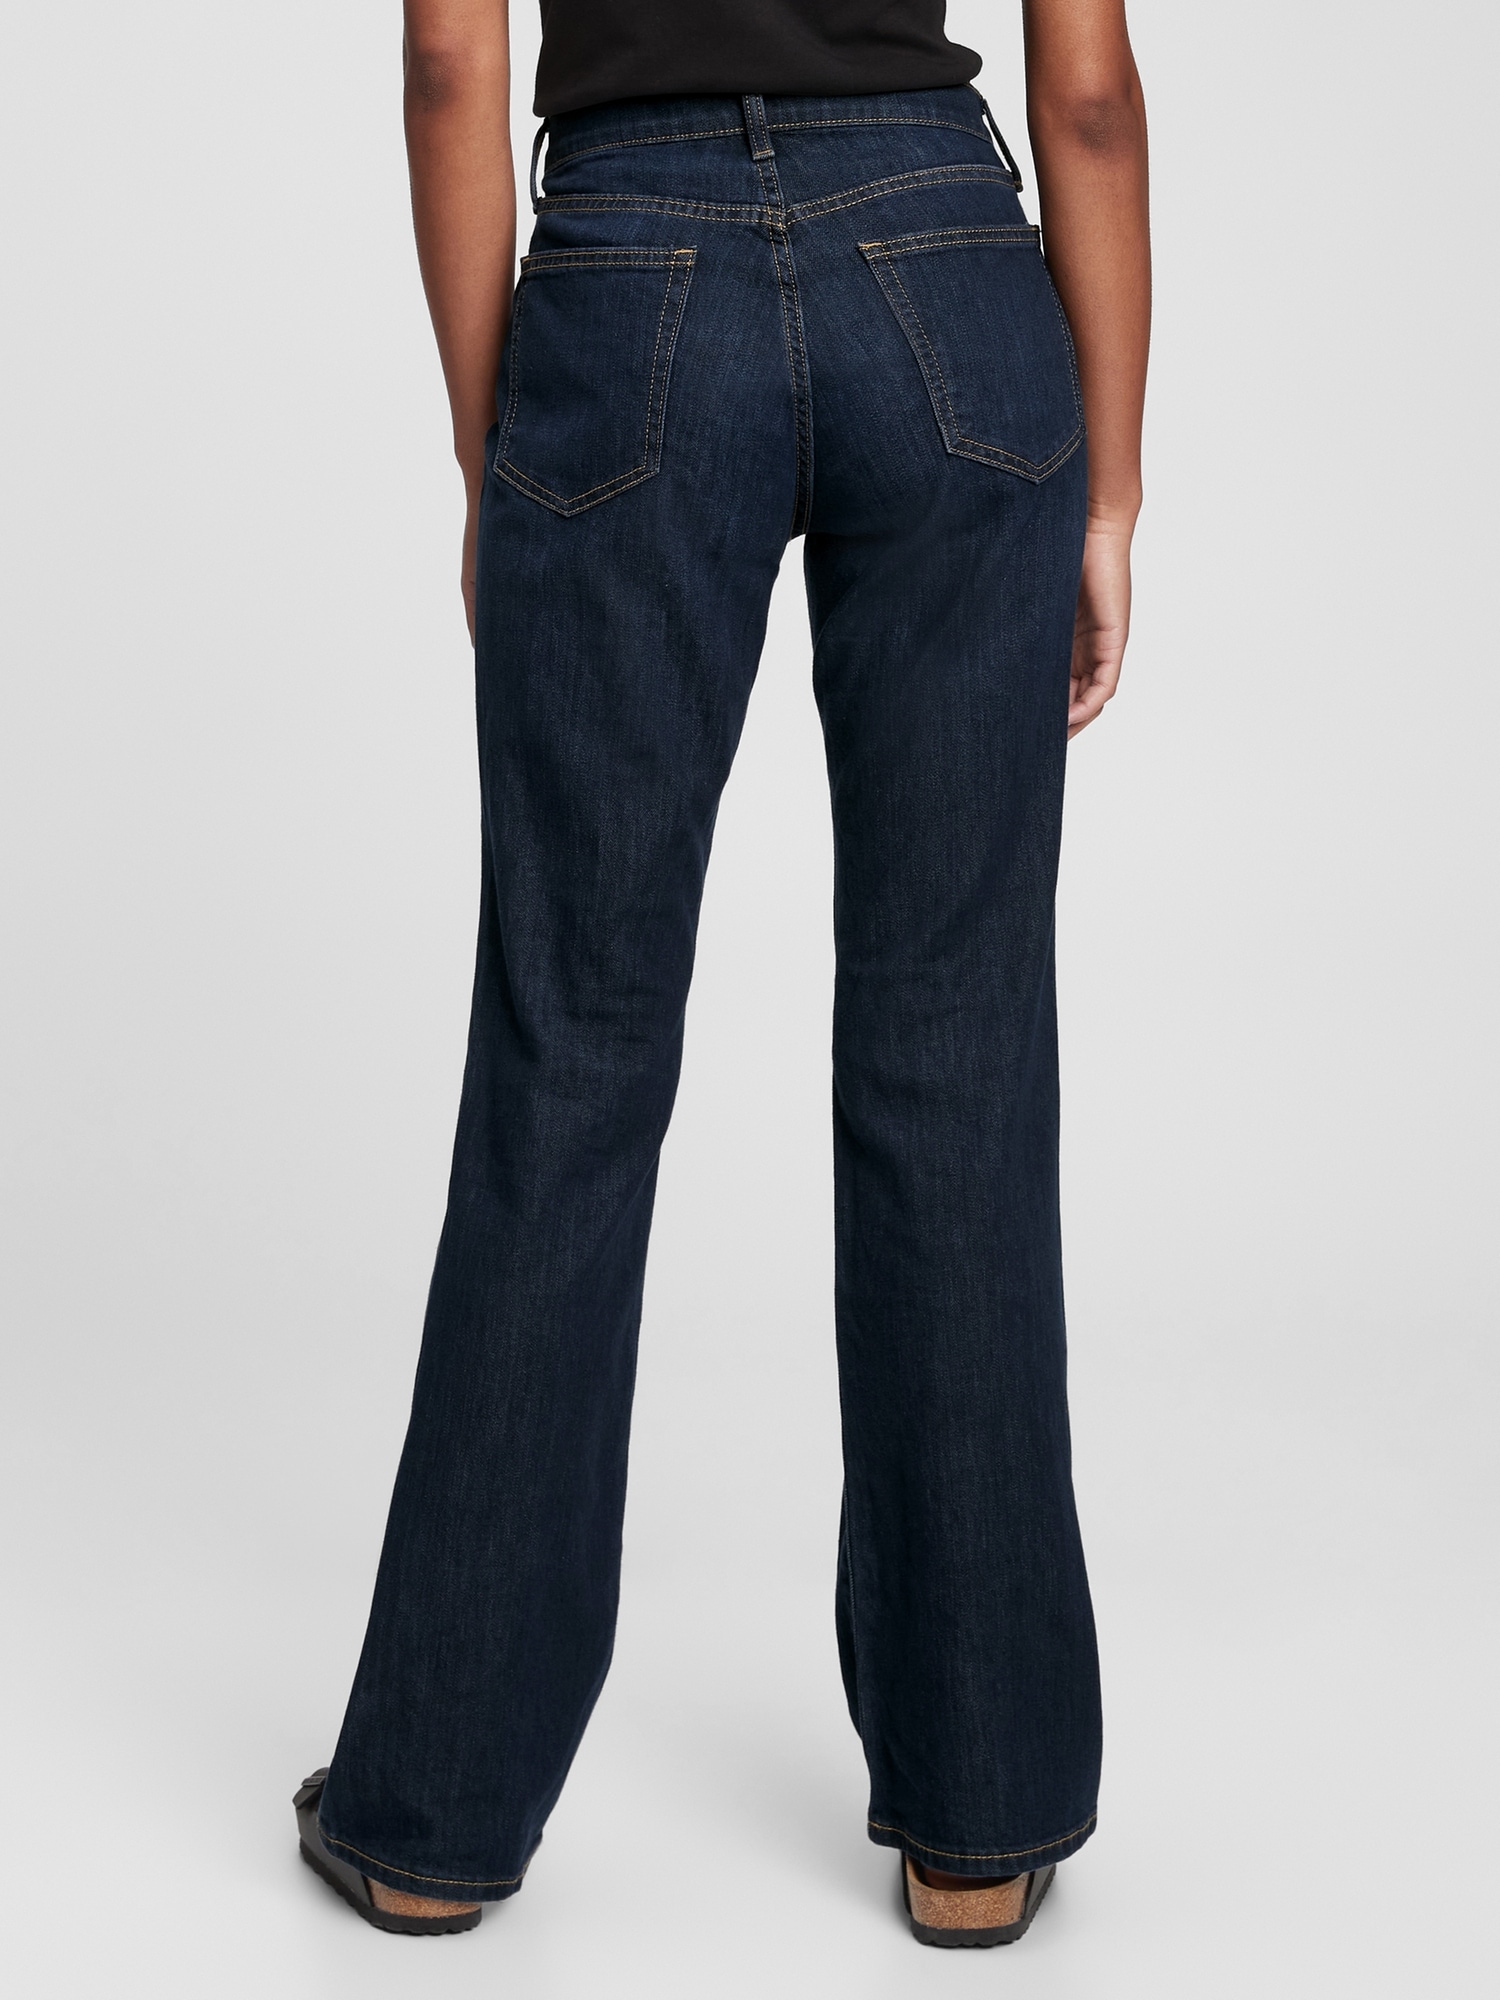 Apotheke unbezahlt mich selber gap bootcut jeans womens Metropolitan ...